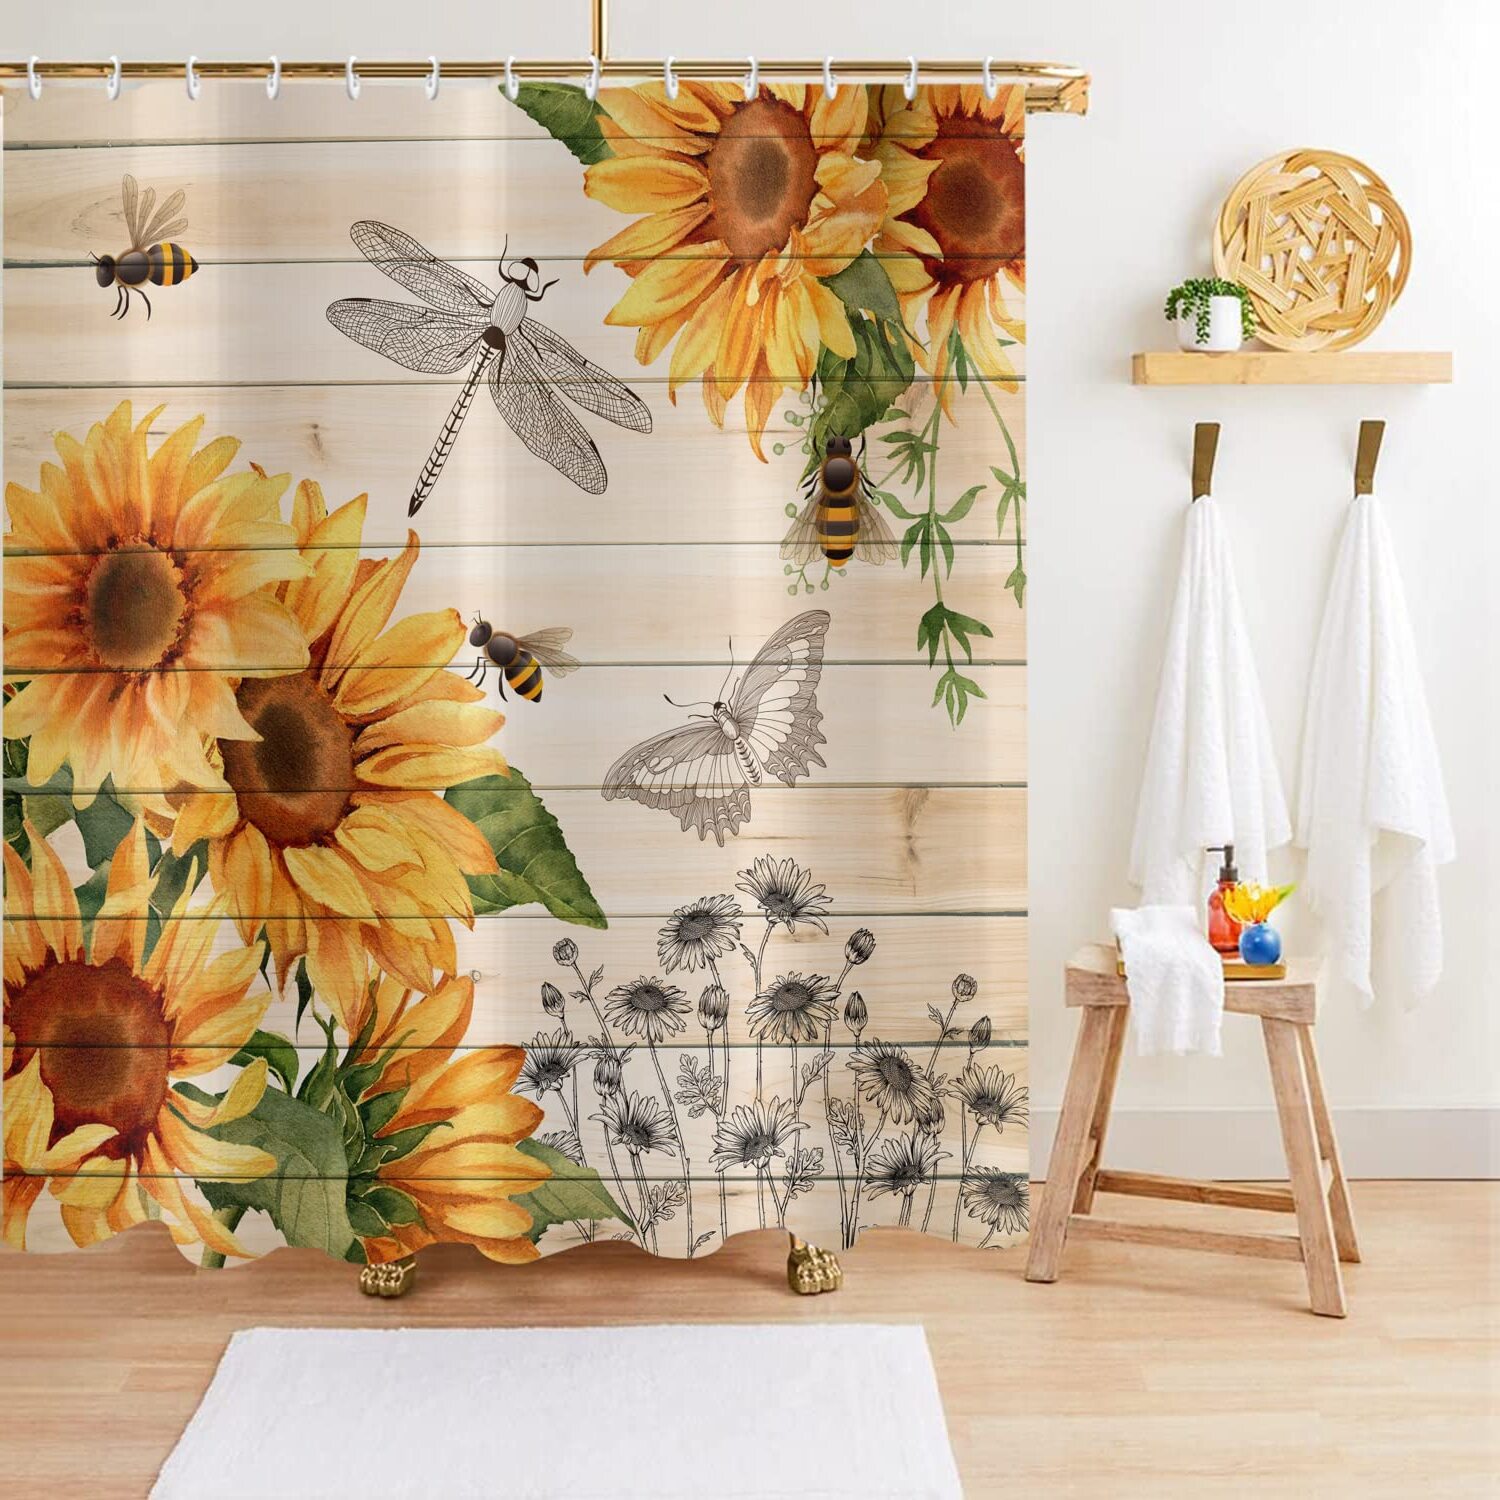 DIY Sunflower Bathroom Decor Ideas